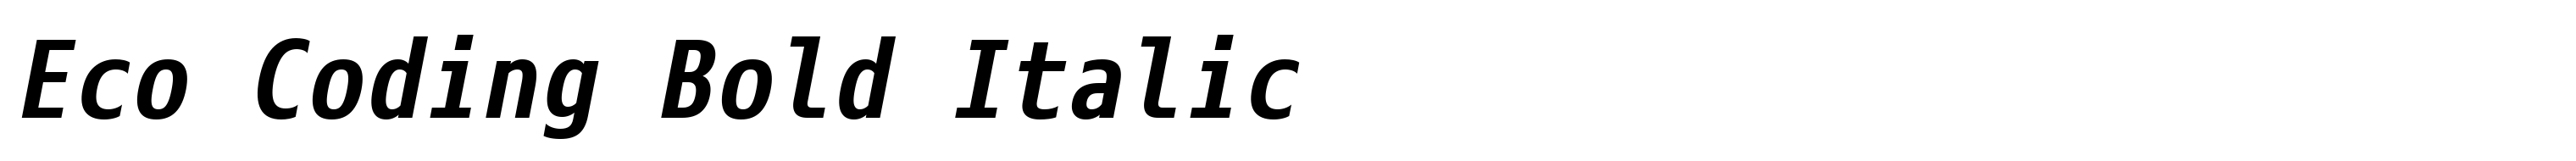 Eco Coding Bold Italic